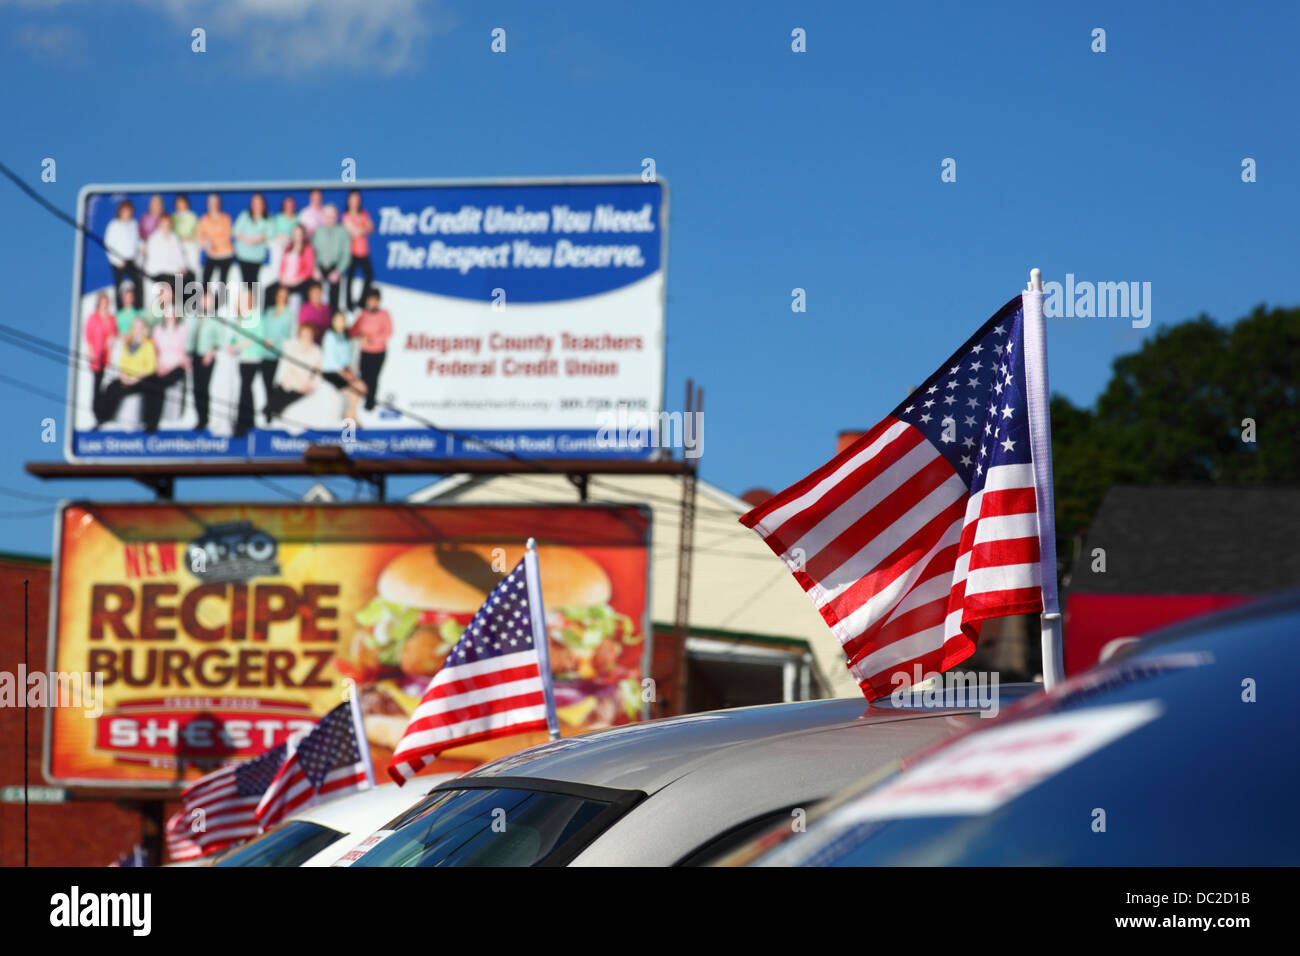 Amerikanische Fahnen auf nagelneuen Autos n vor Rezept Burgerz und Allegany County Lehrer Federal Credit Union Plakatwände, Cumberland, Maryland, USA Stockfoto